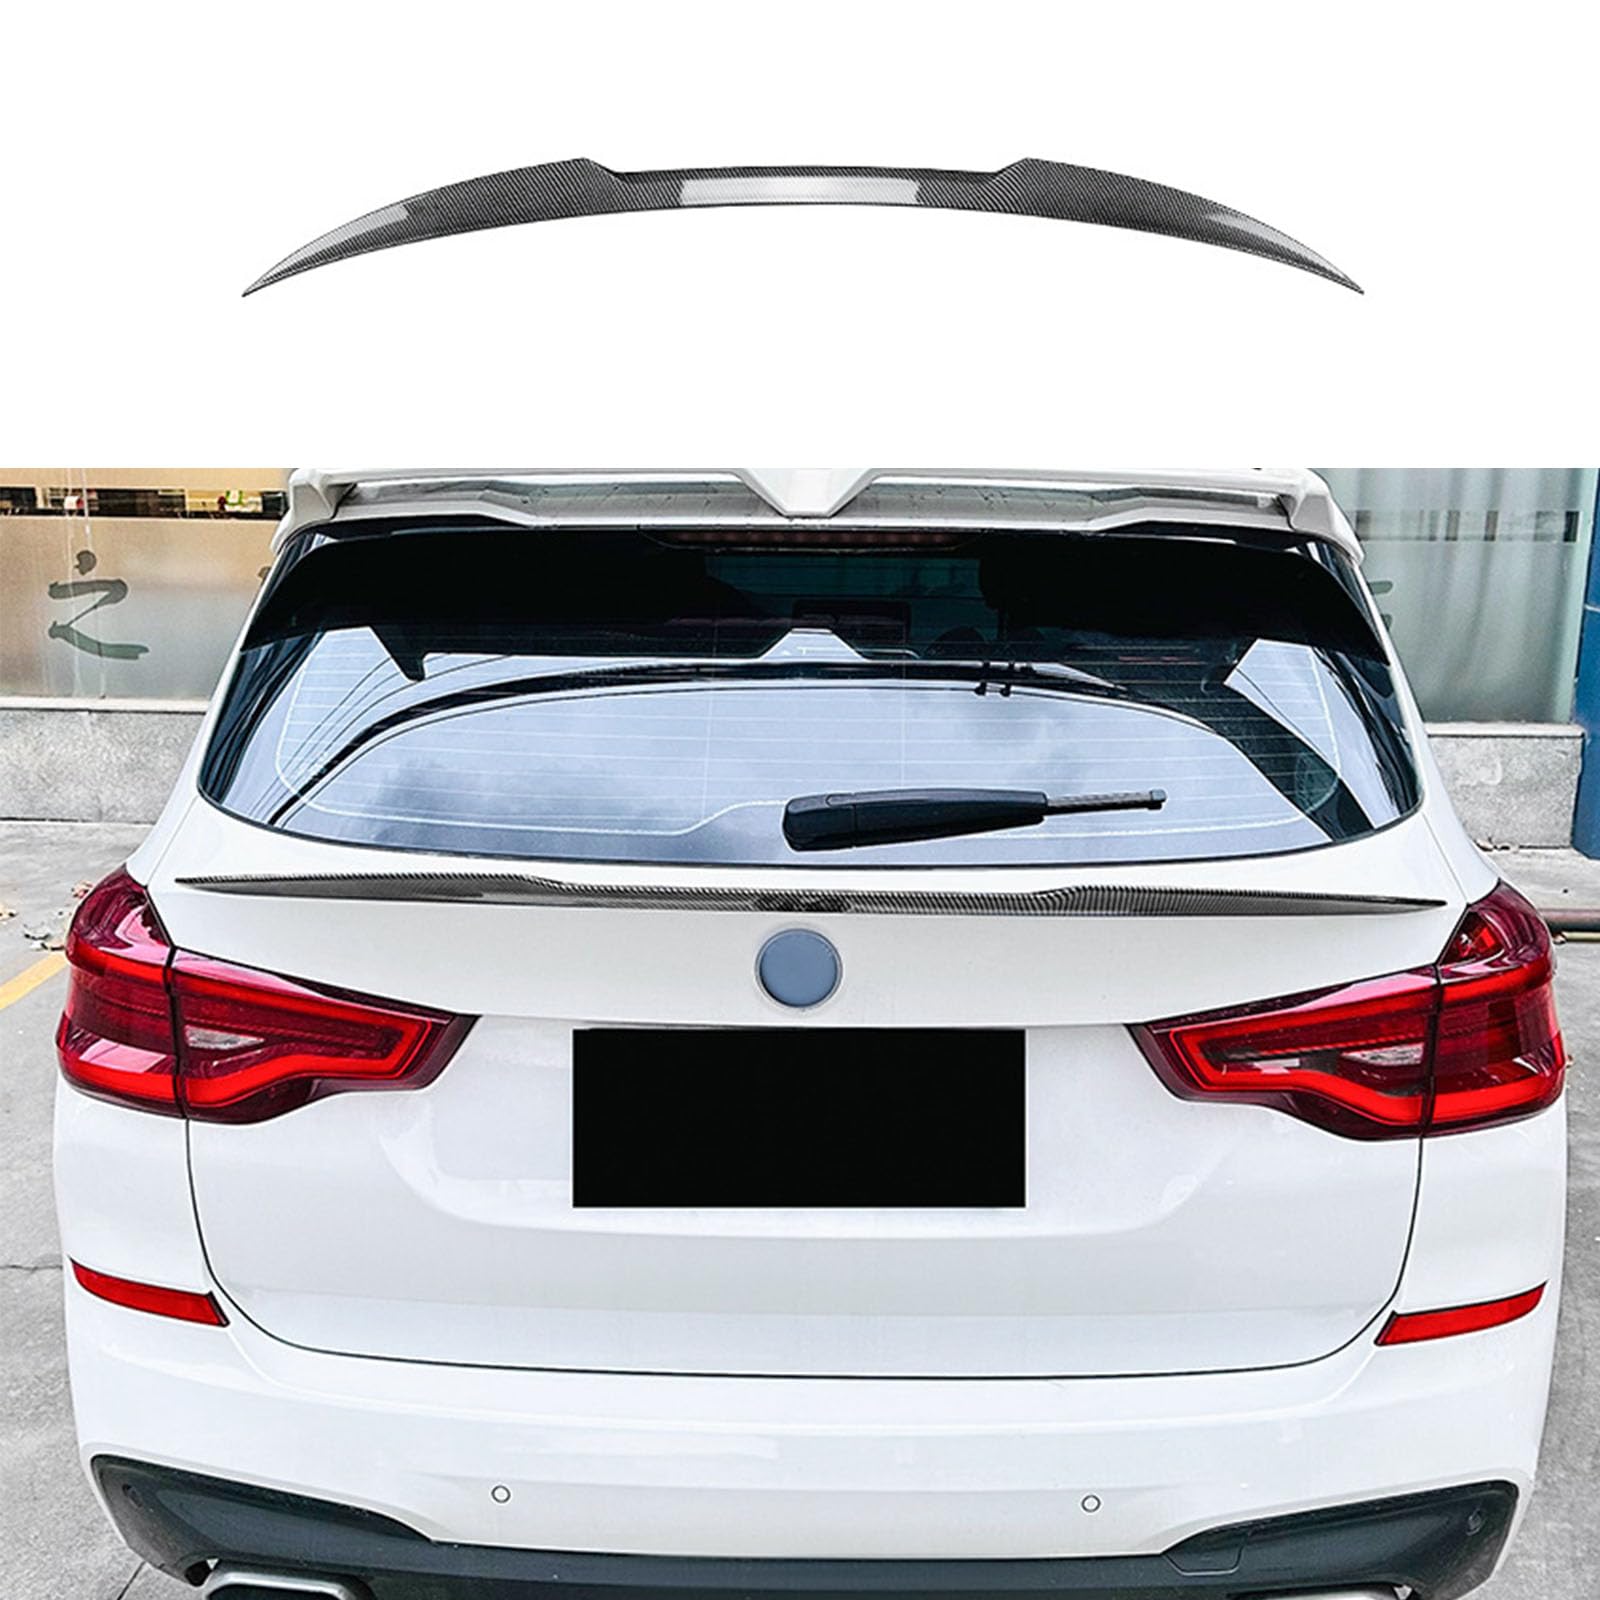 Kompatibel für BMW X3 G01 2018+, Auto Heckflügel Kofferraumspoiler Kofferraum Flügel Lippe Spoiler Bodykits Zubehör,B Carbon Fiber Look von YPGHBHD